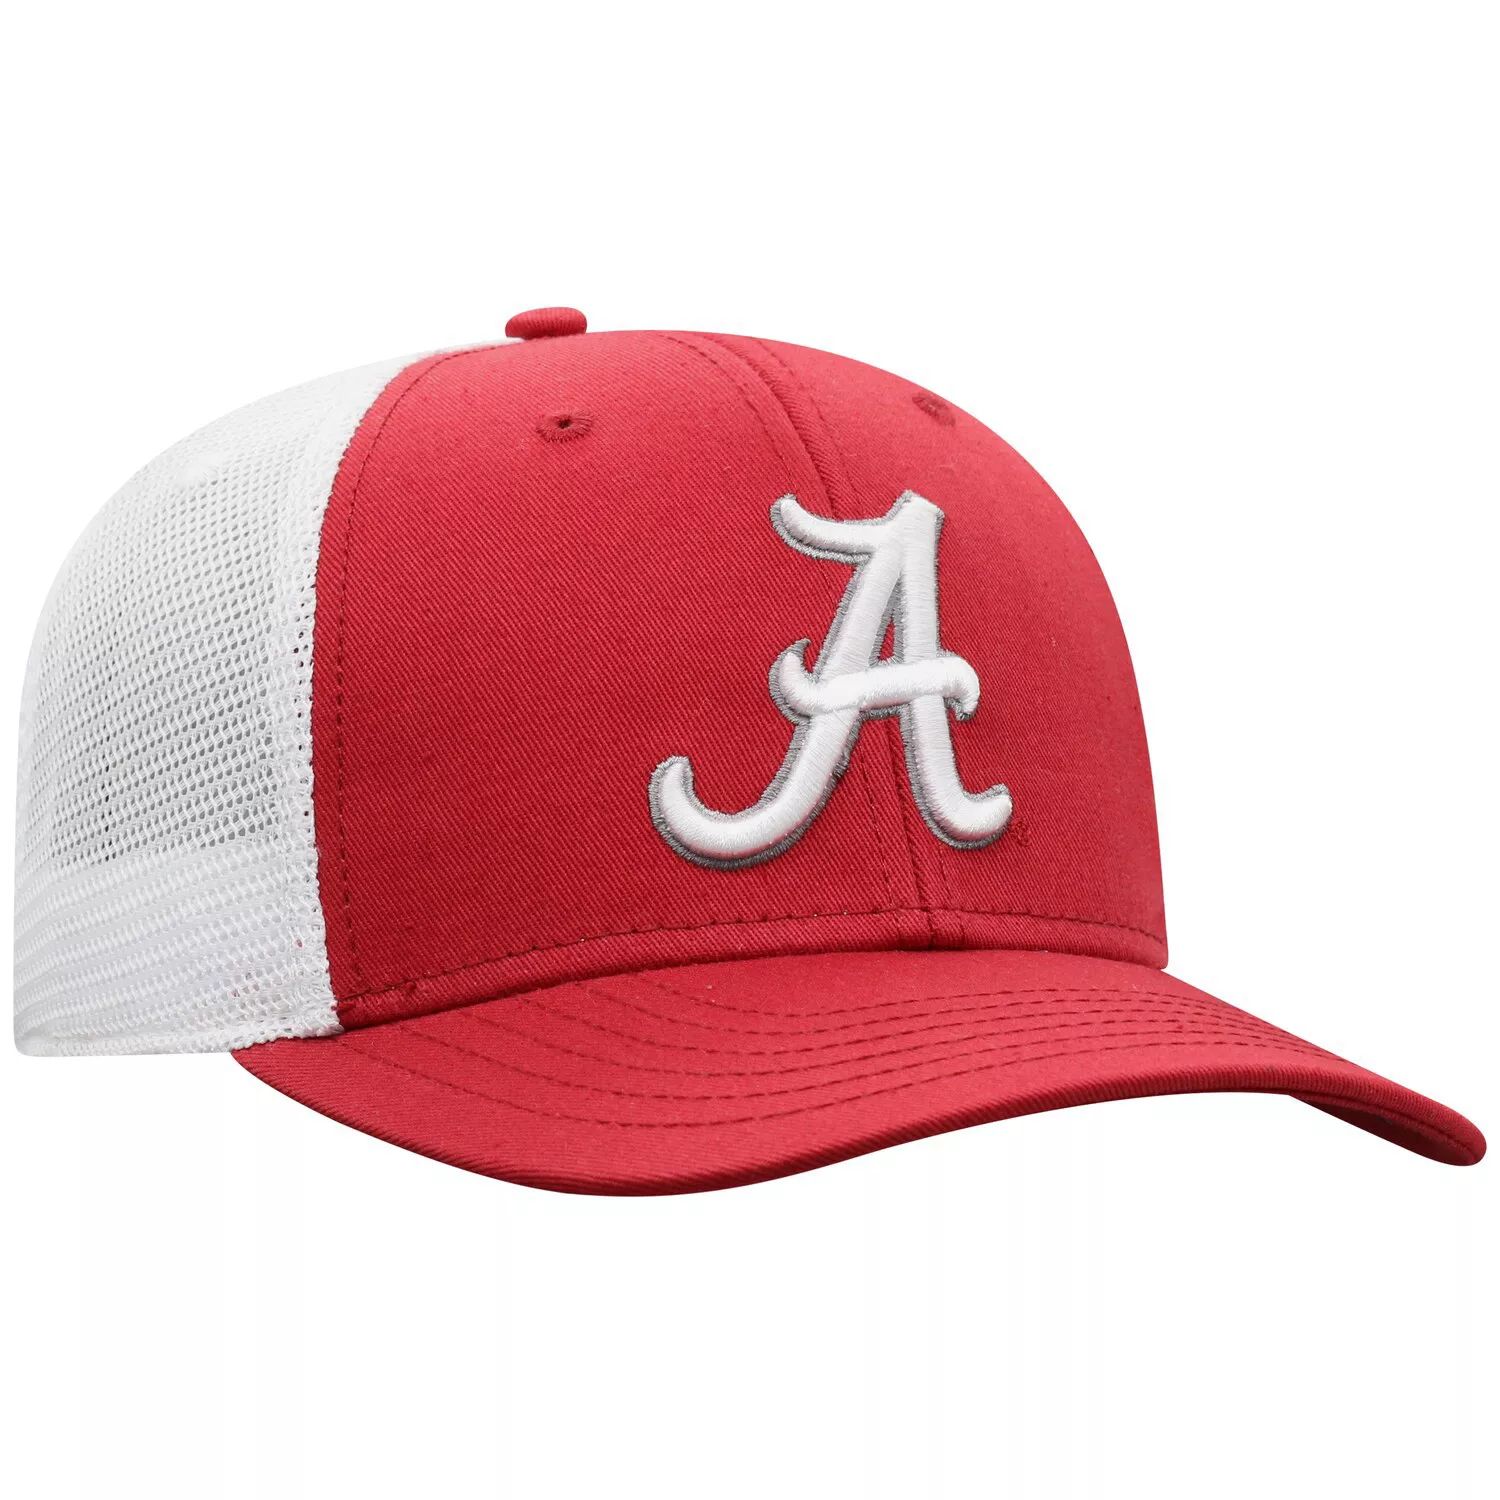 Fitted cap бейсболка. Синтетика найк мужские Кепки. Кепки мужские 47 бренд с шлемом. Nike Red cap.